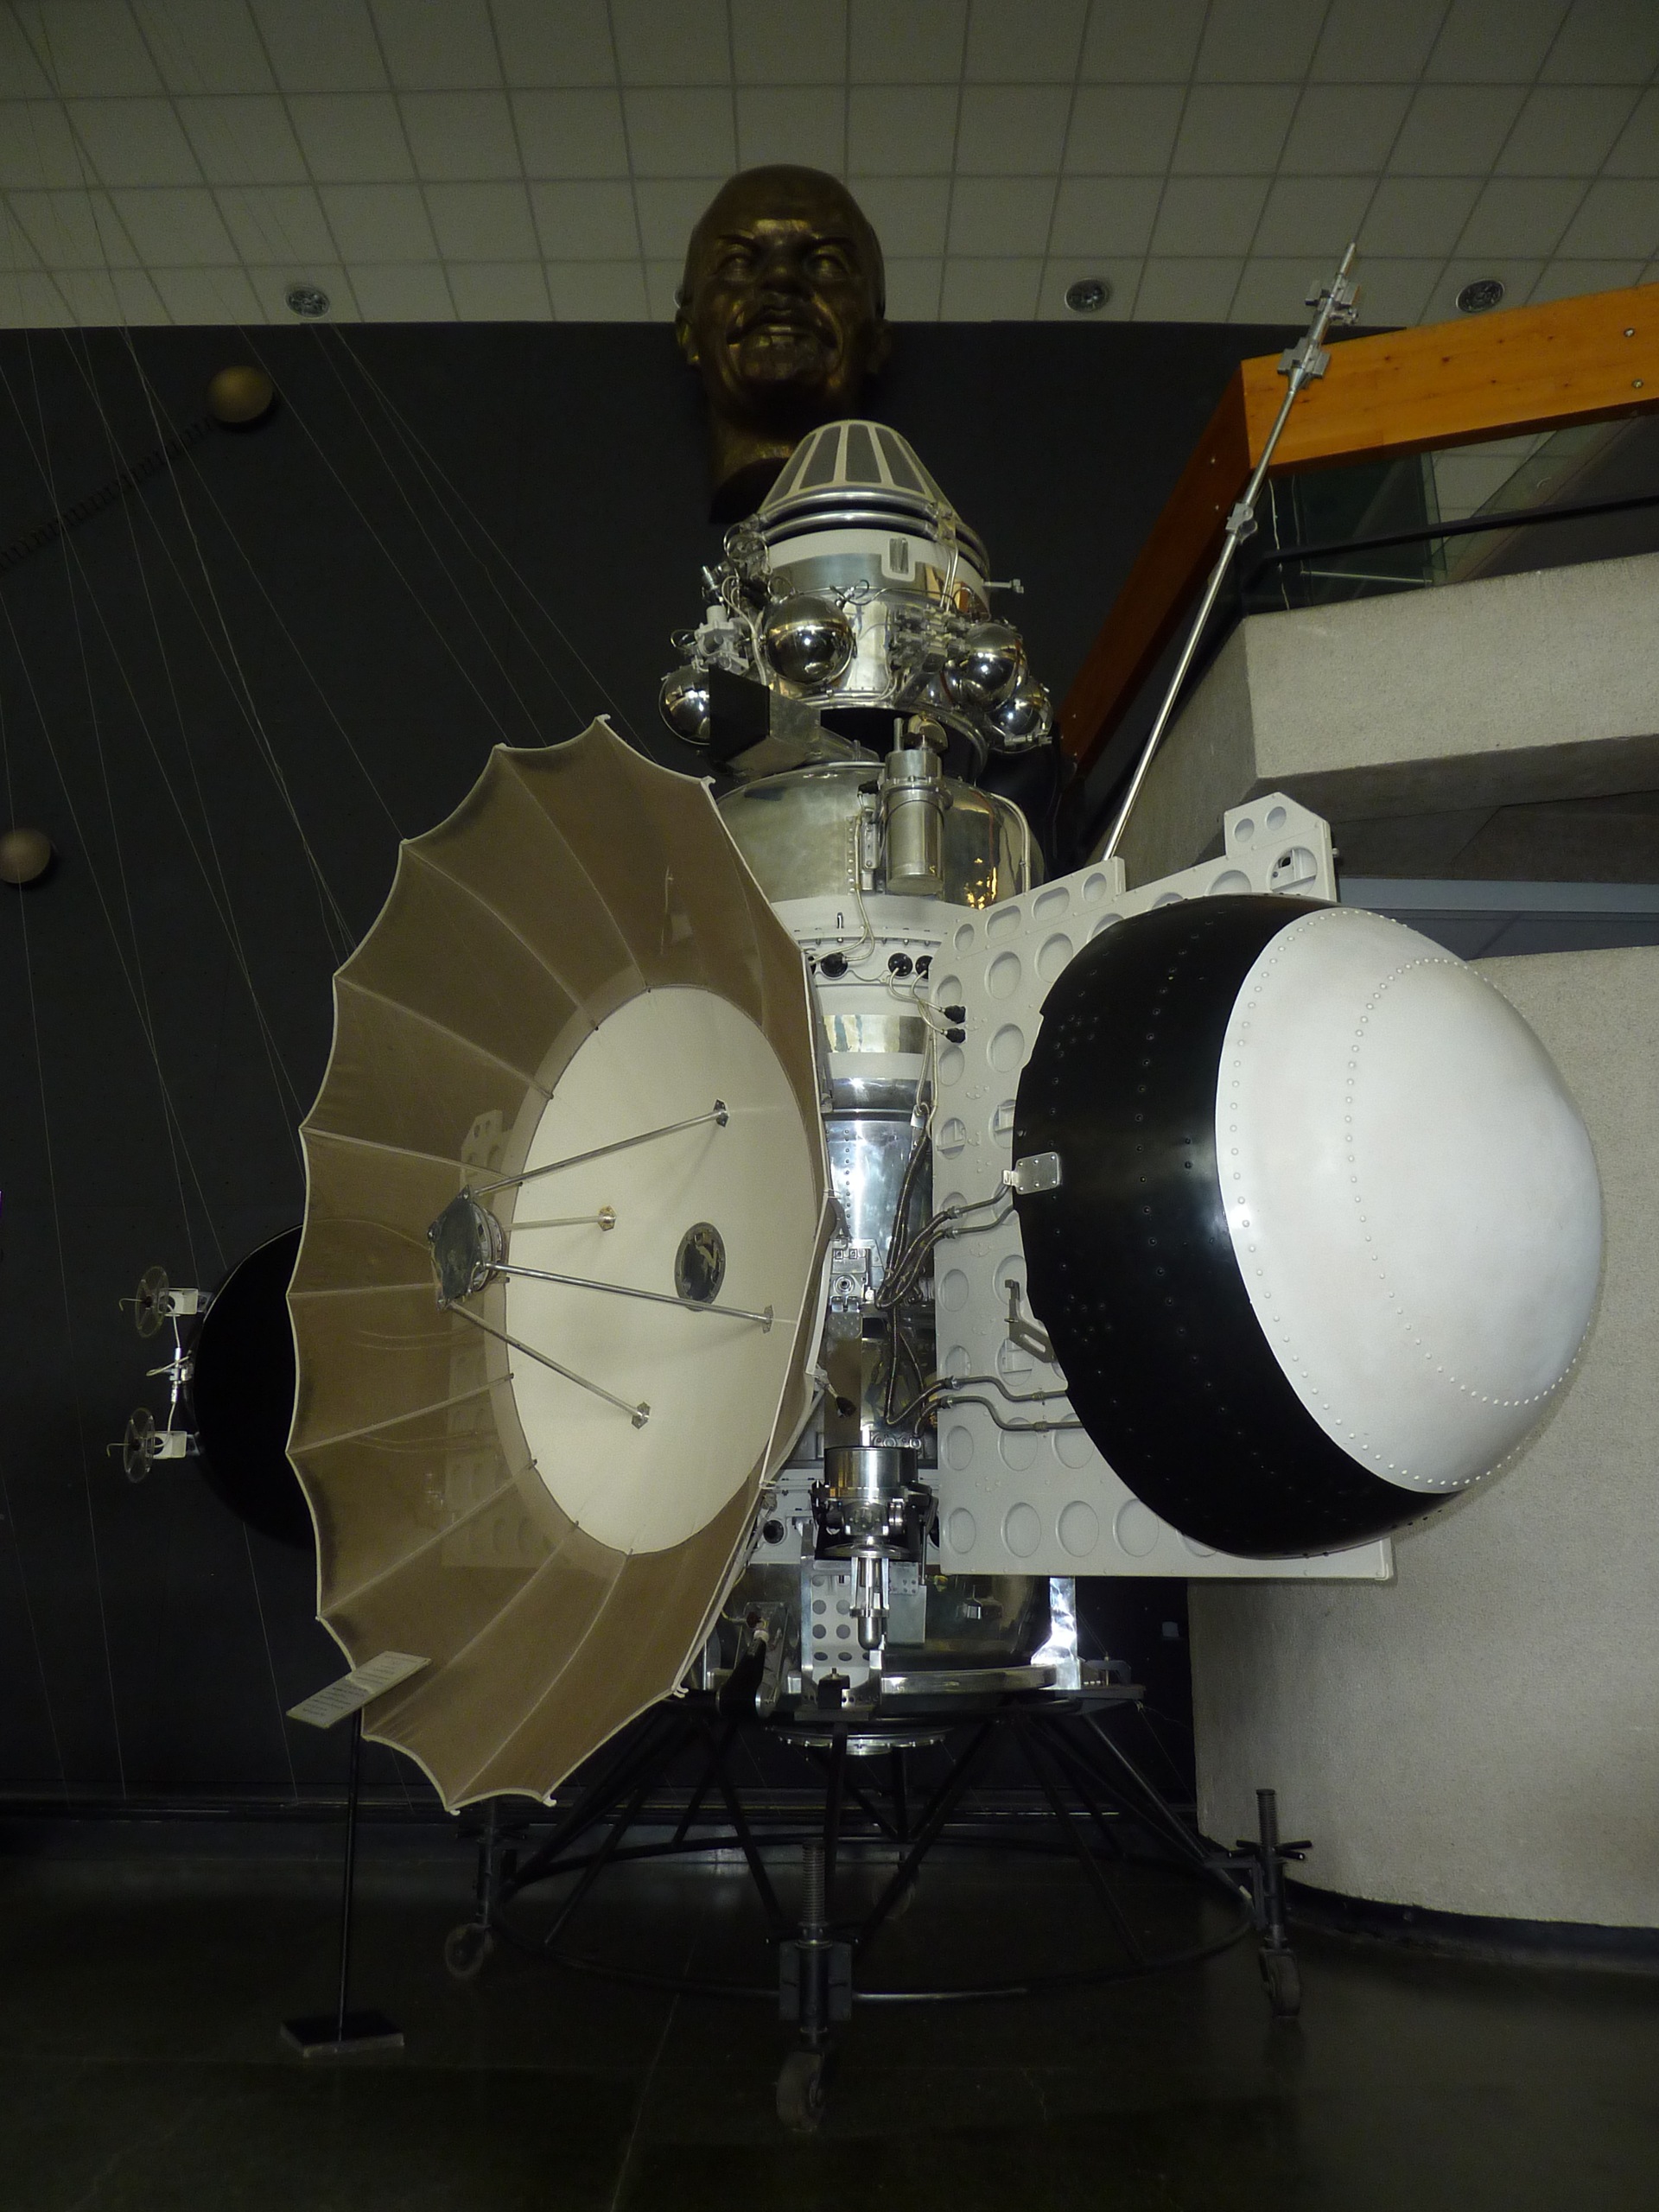 Программа зонд. Луна-10 автоматическая межпланетная станция. Софт зонд. Программа зонд Колесников.